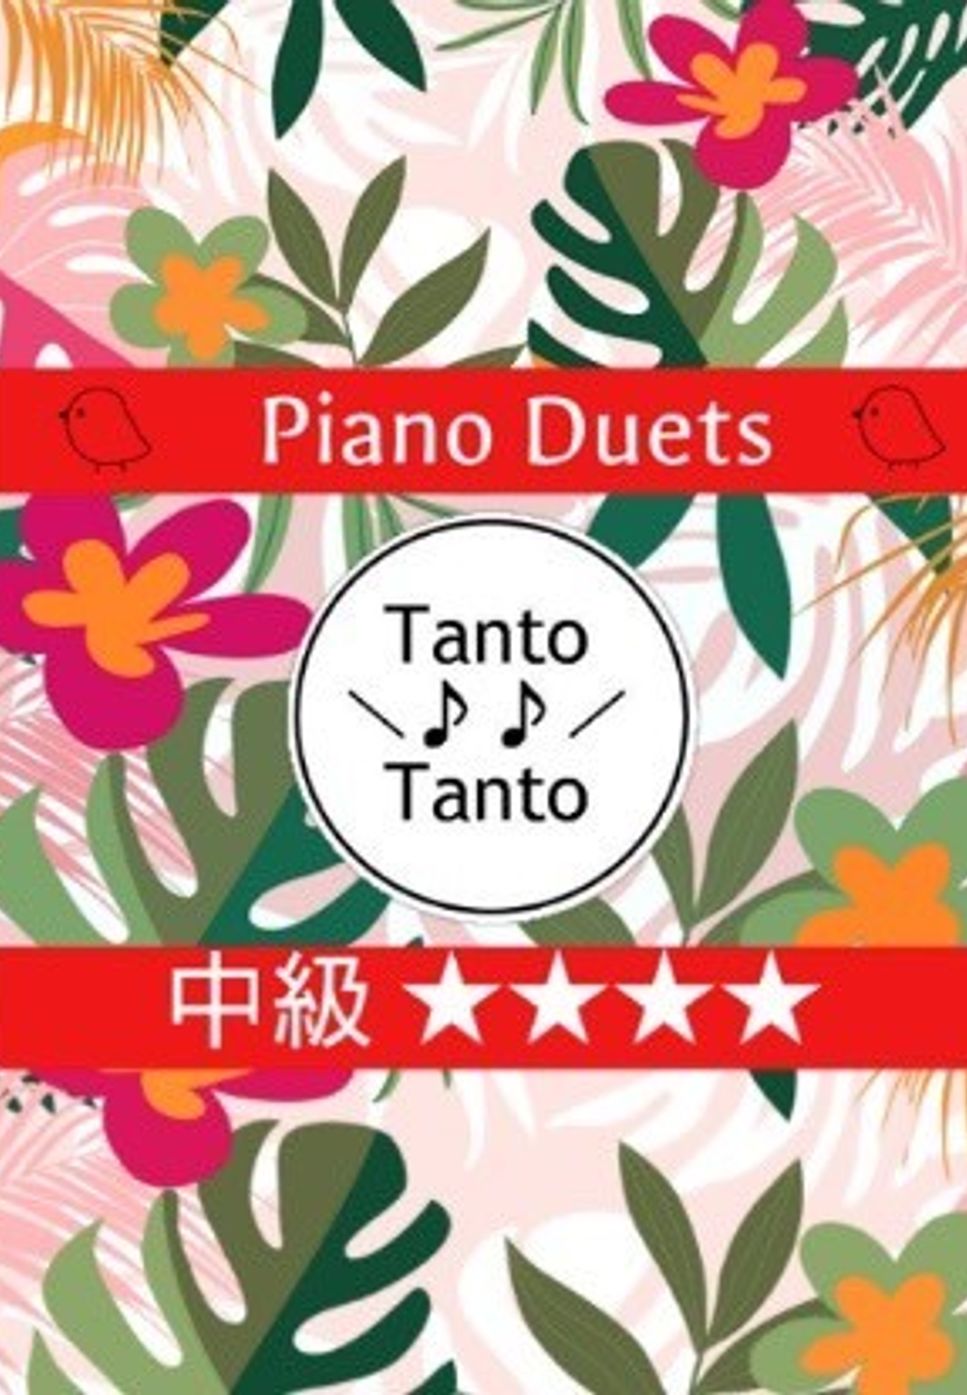 ロバート バーナード シャーマン　リチャード モートン シャーマン - SUPERCALIFRAGILISTICEXPIALIDOCIOUS (4手連弾➕ハンドベル or グロッケン Piano Duets in C) by Tanto Tanto